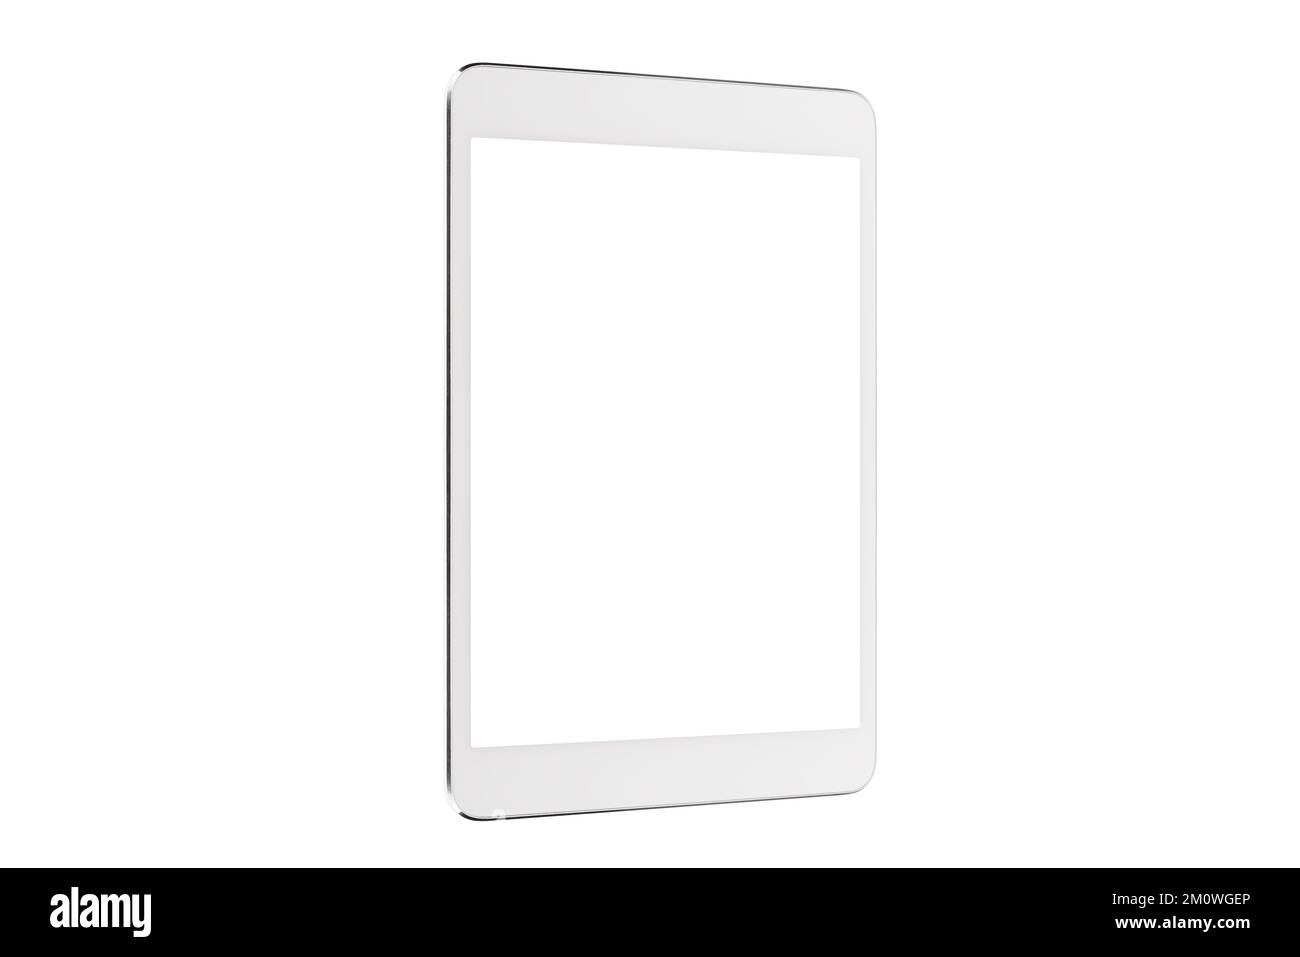 Tableta digital aislada en fondo blanco de maqueta de tres cuartos, nueva tableta sin marco negra moderna en blanco con pantalla blanca Foto de stock